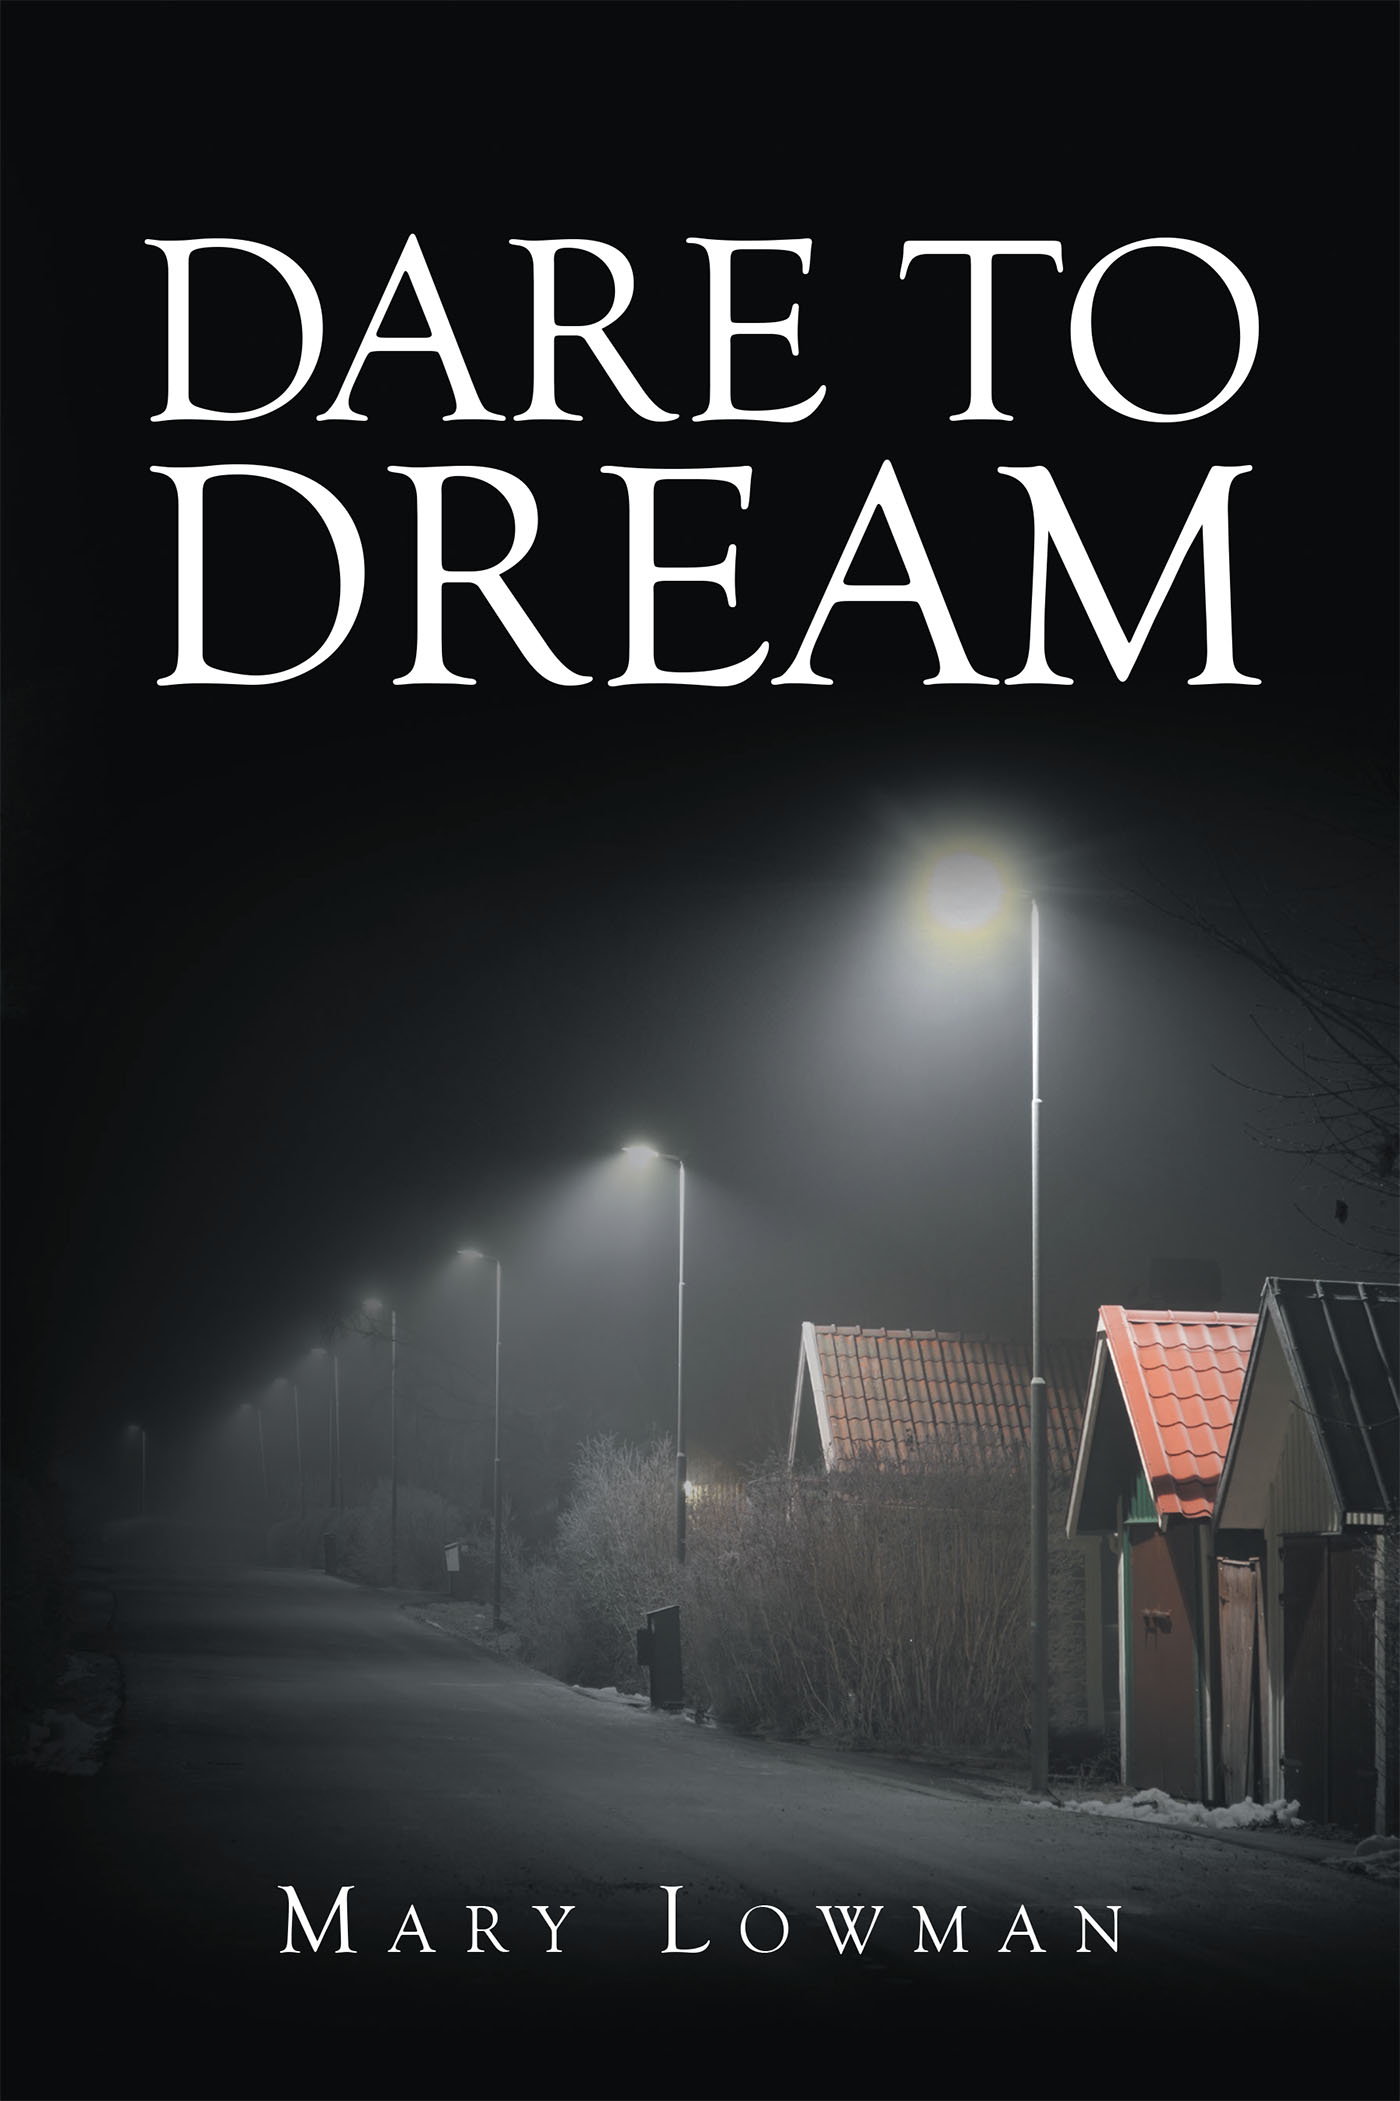 Dare to Dream Cover Image